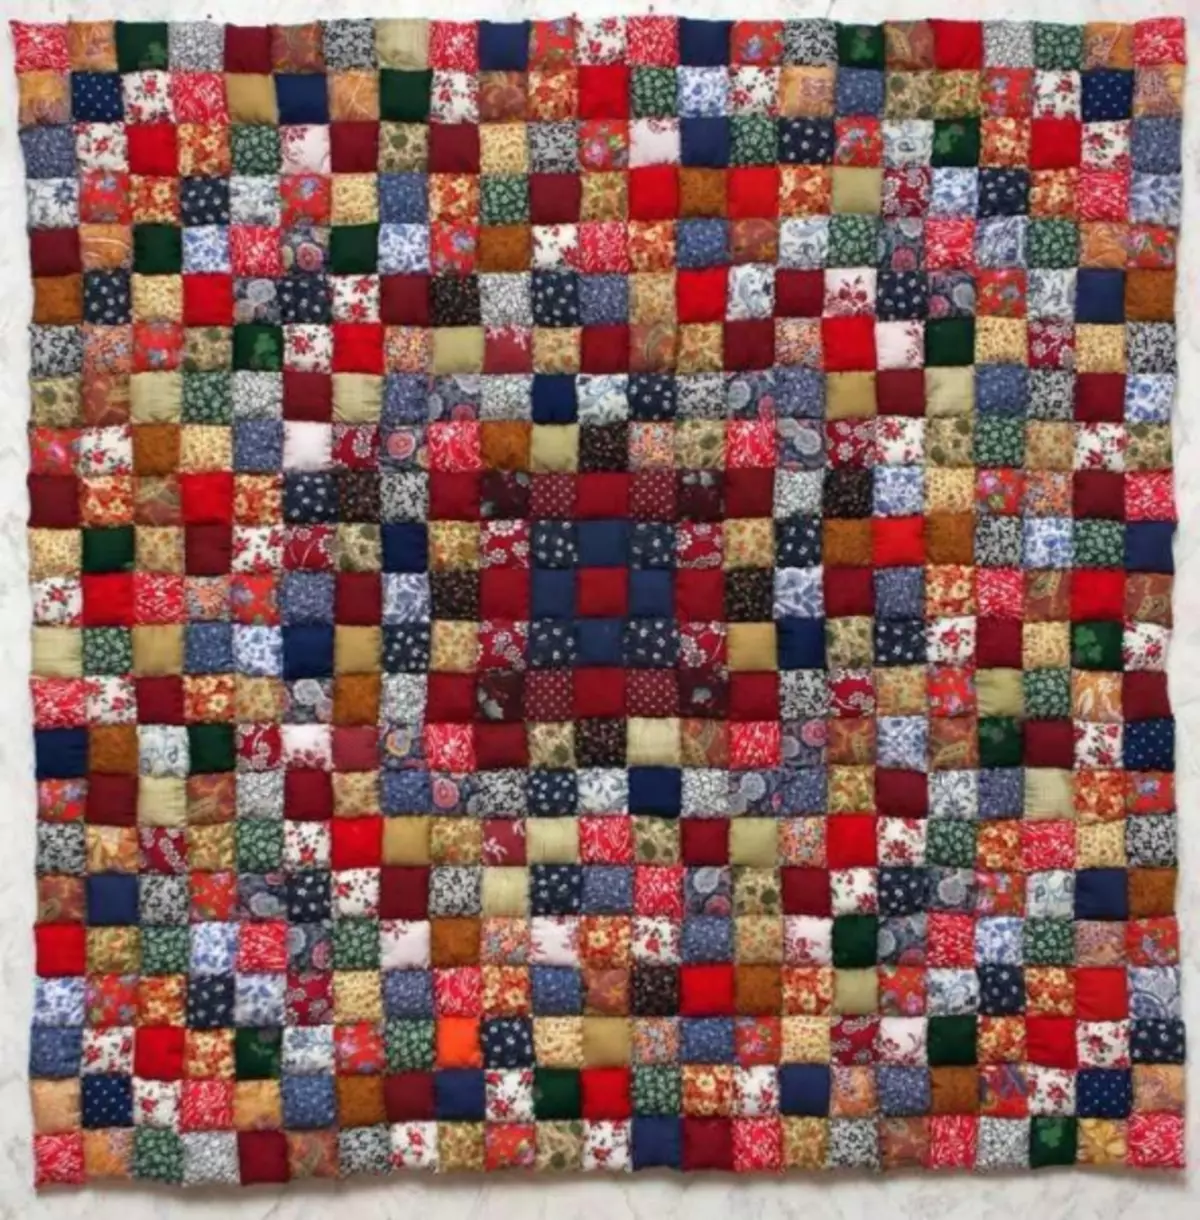 Mozaiku i patchwork: patchwork me duart tuaja, fotografi në letër, turi program, çfarë është mirë, galeri photo, udhëzime video